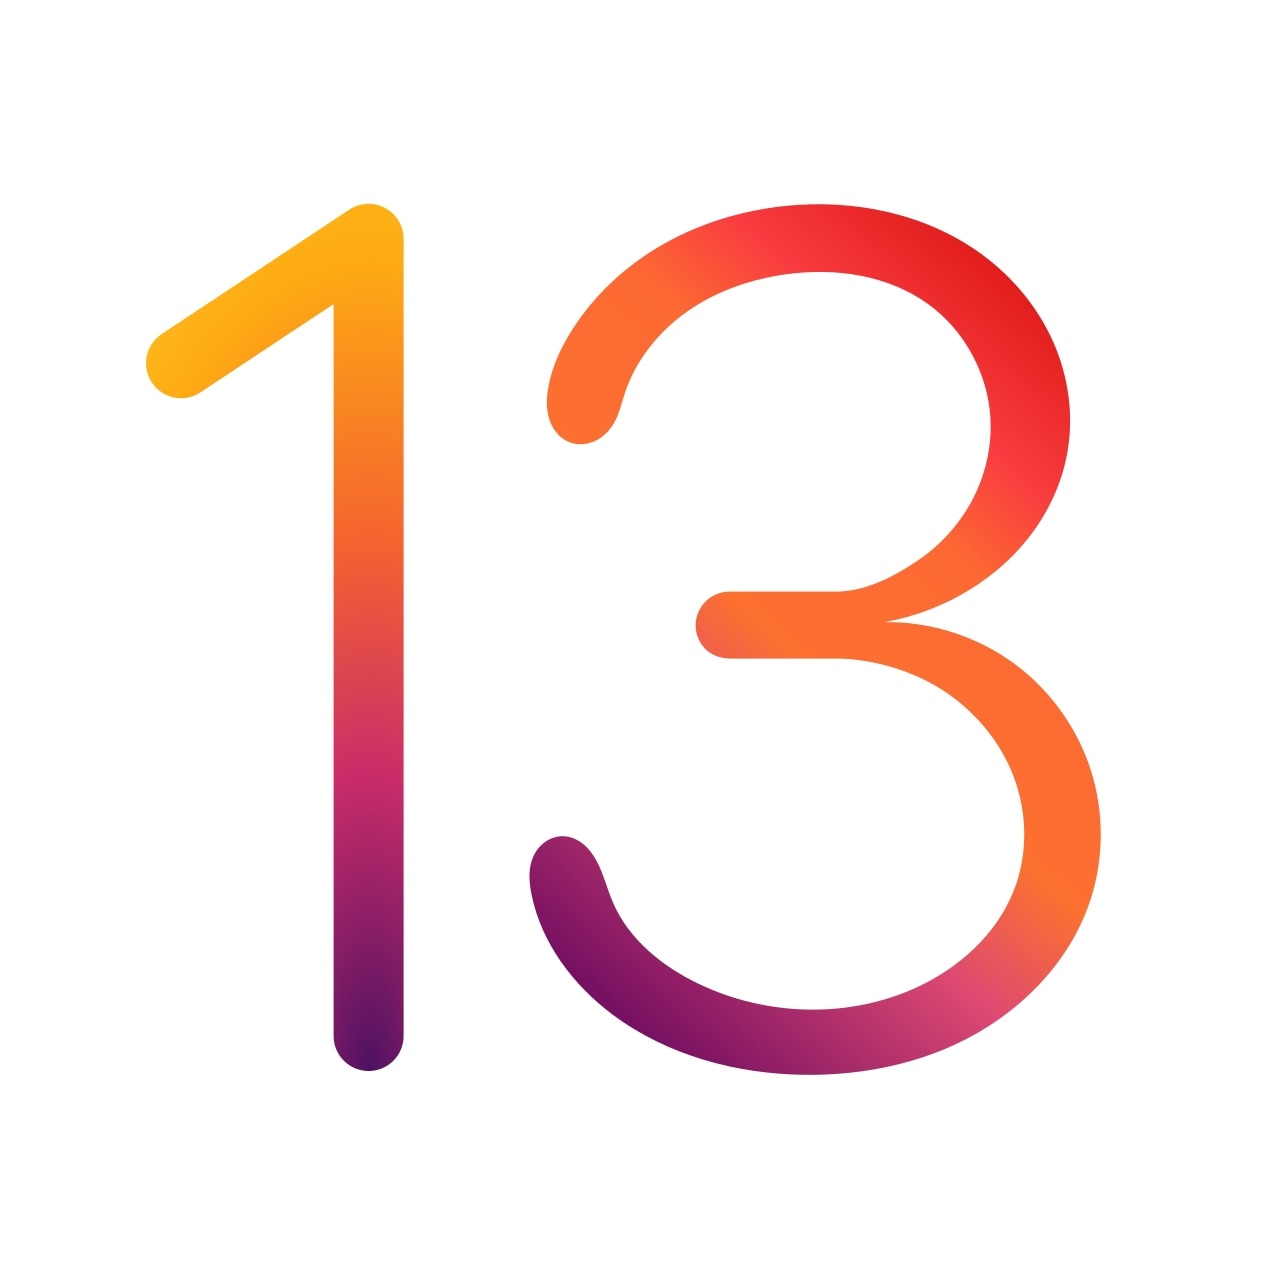 Apple wypuszcza pierwsze publiczne wersje beta iOS 13.4, iPadOS 13.4 dla publicznych beta testerów [Updated] 4